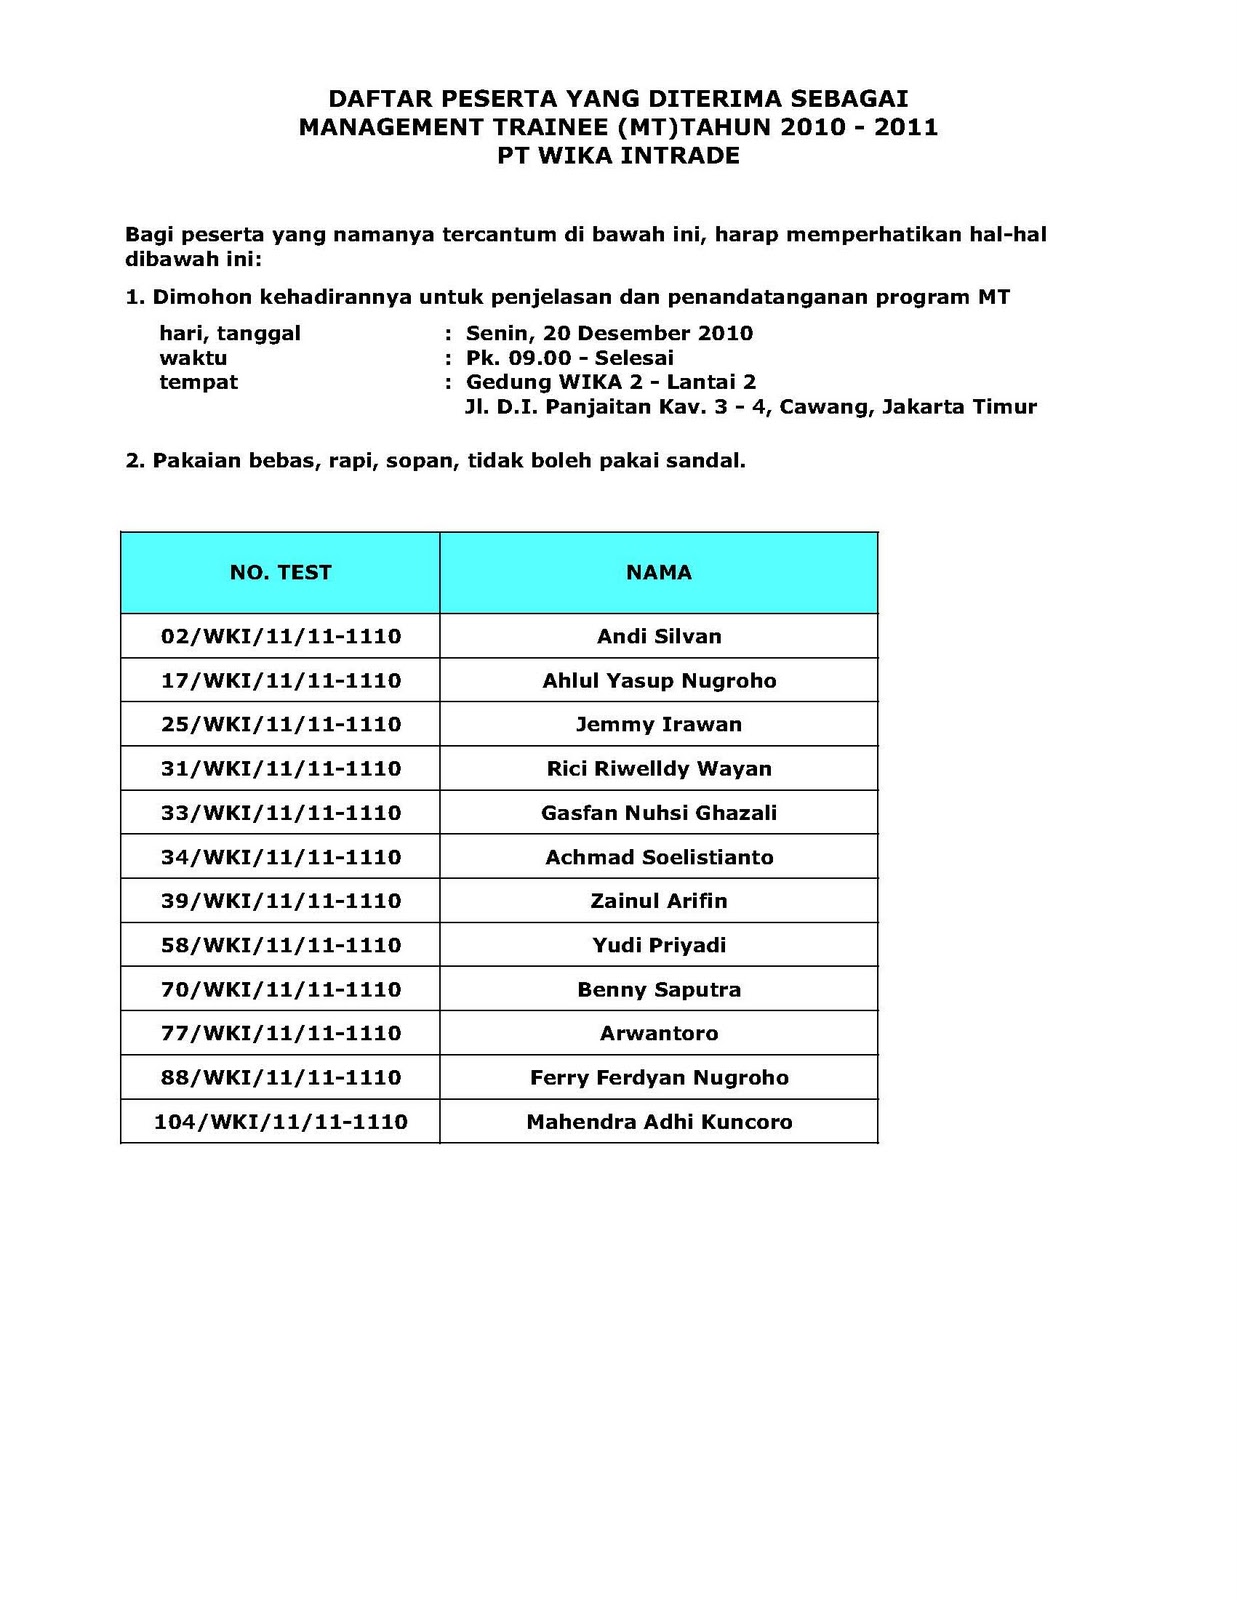 Berikut adalah daftar Peserta Management Trainee PT Wijaya Karya Intrade Tahun 2010 2011